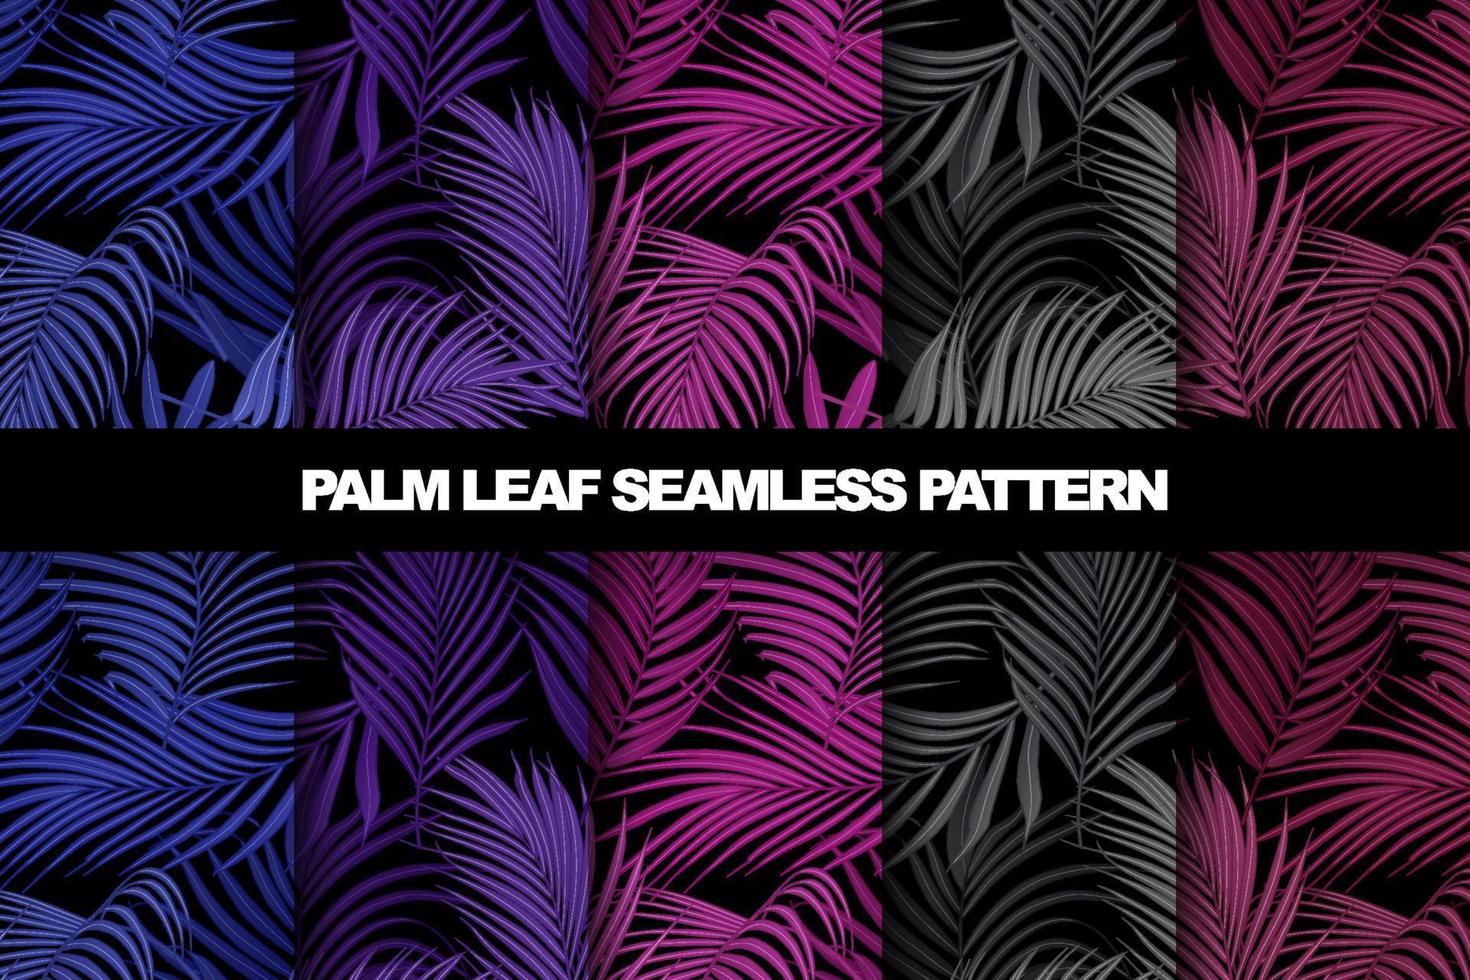 samling av palmblad vektor seamless mönster